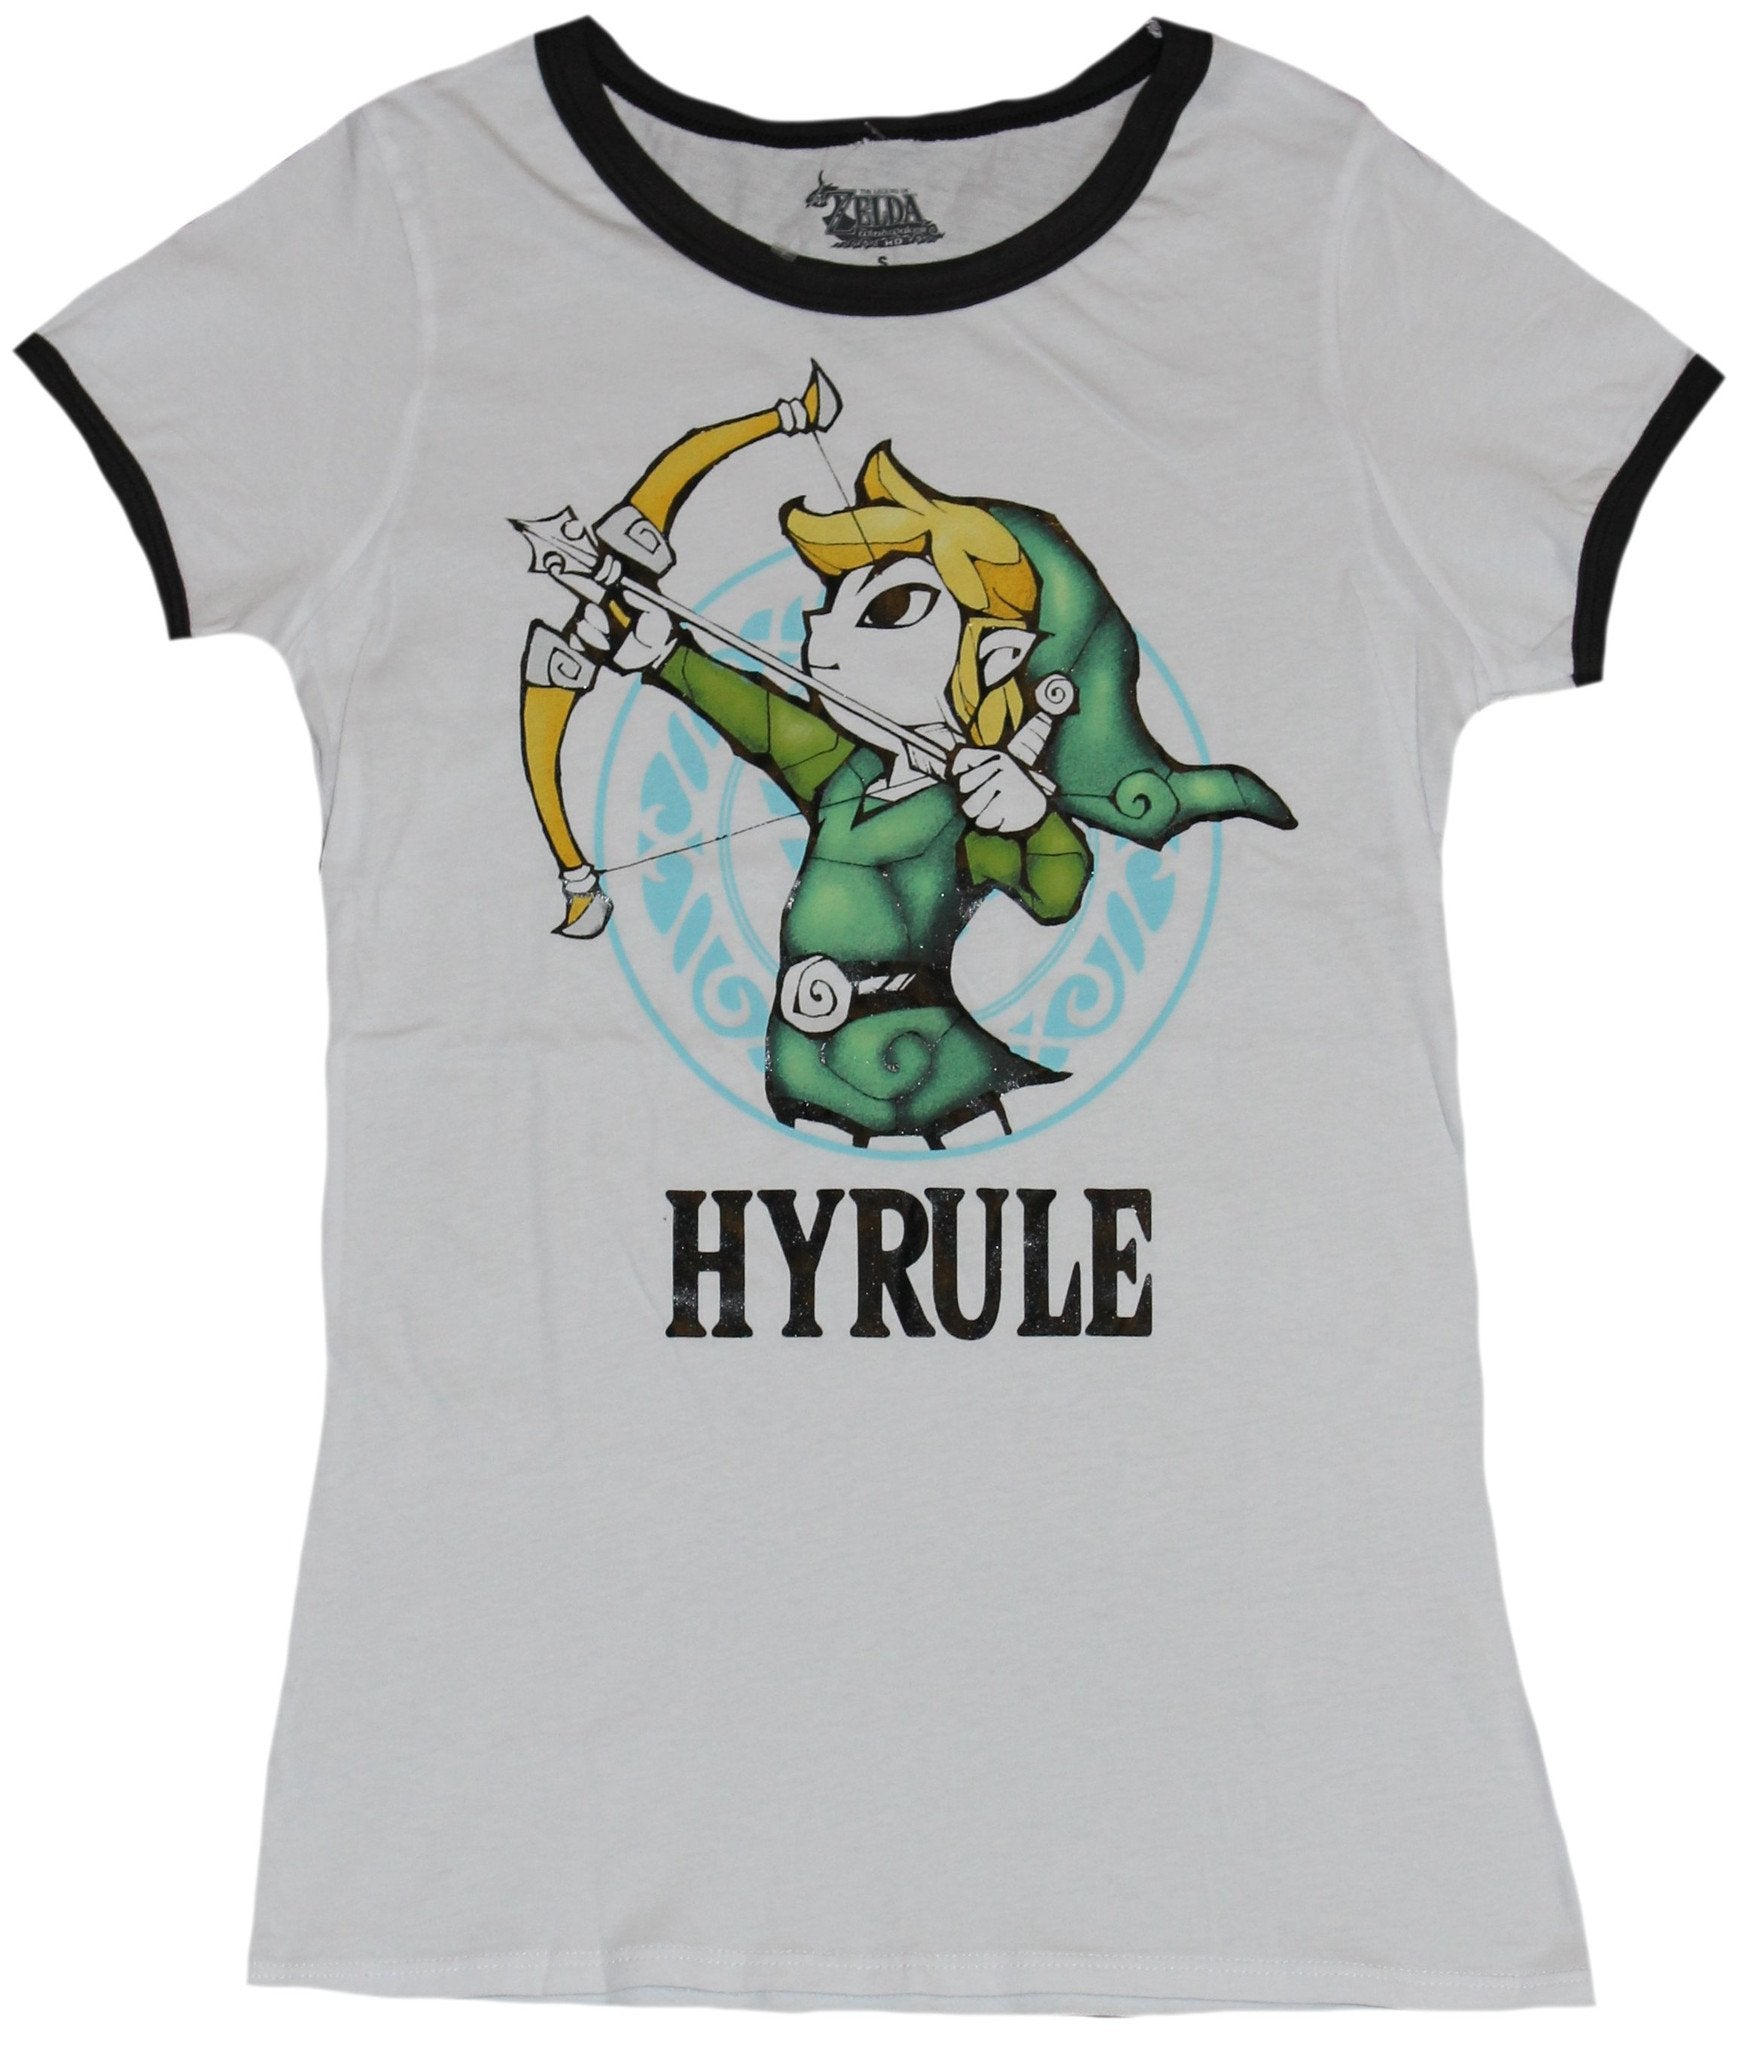 Legend of Zelda Girls Juniors Ringer  T-Shirt - Zelda Hyrule Bow Drawing Image